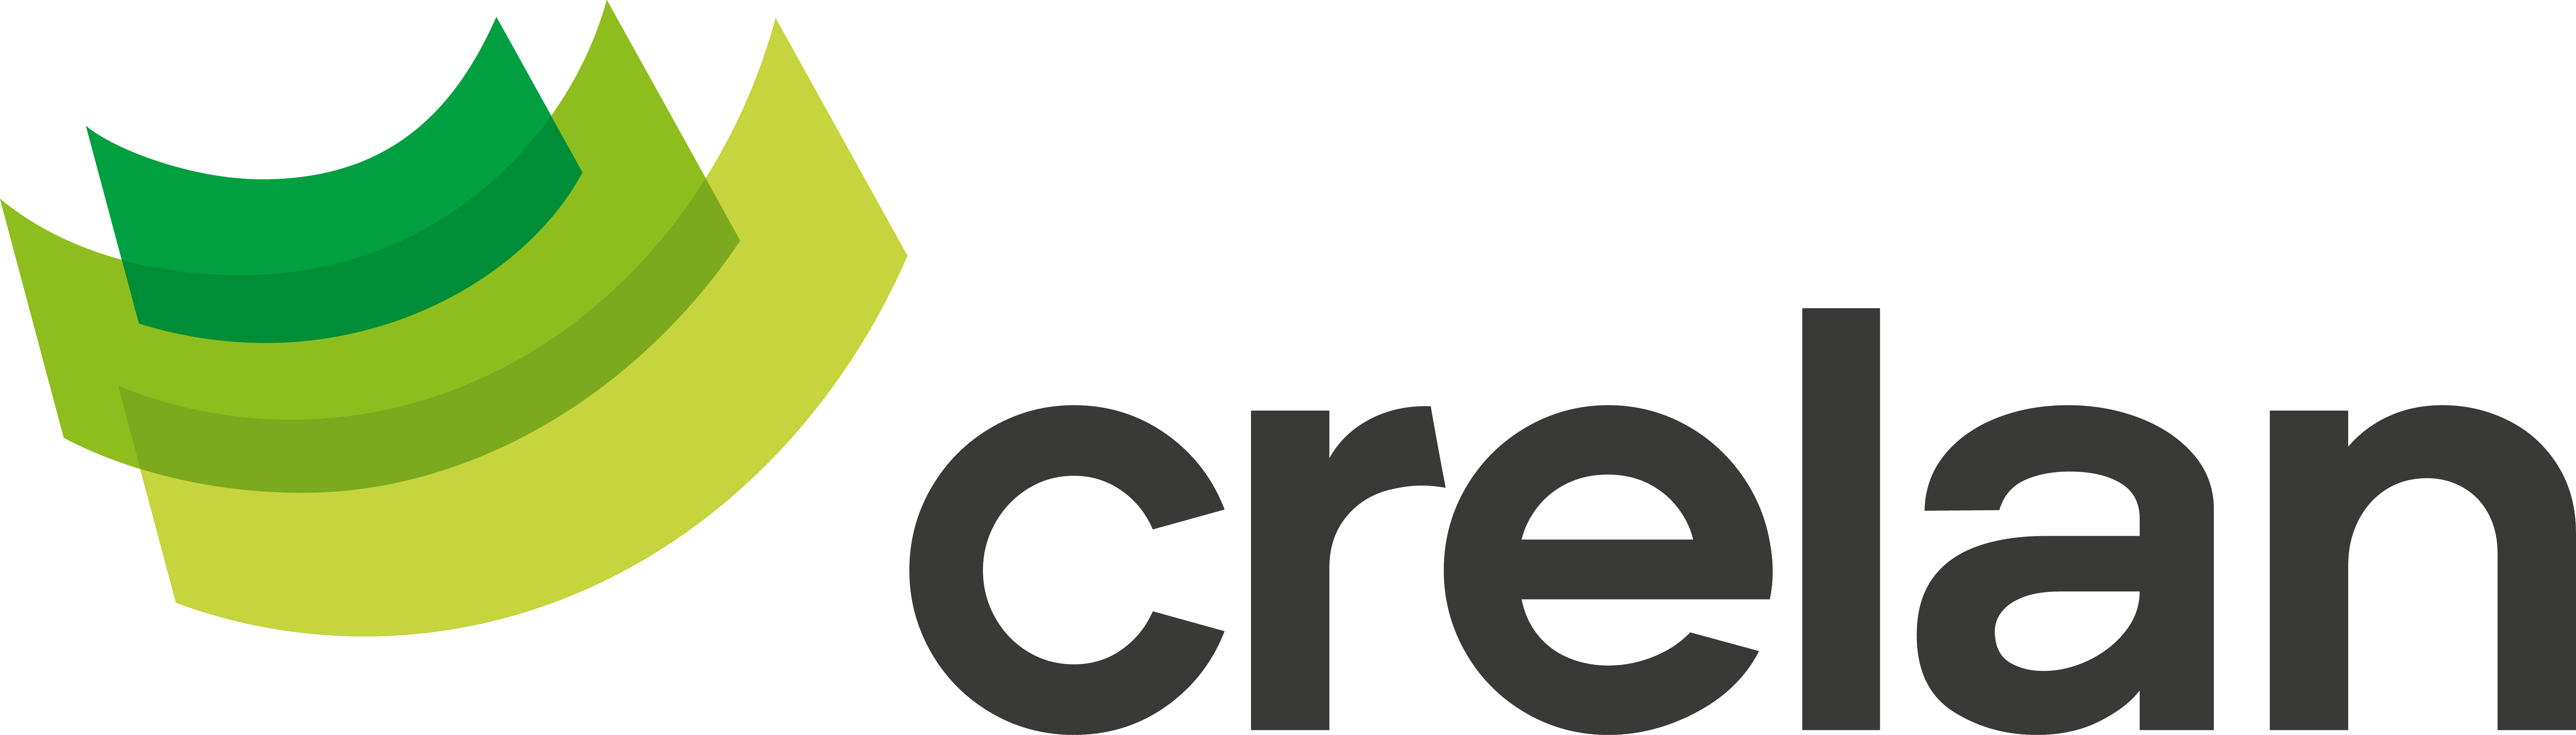 Crelan logo